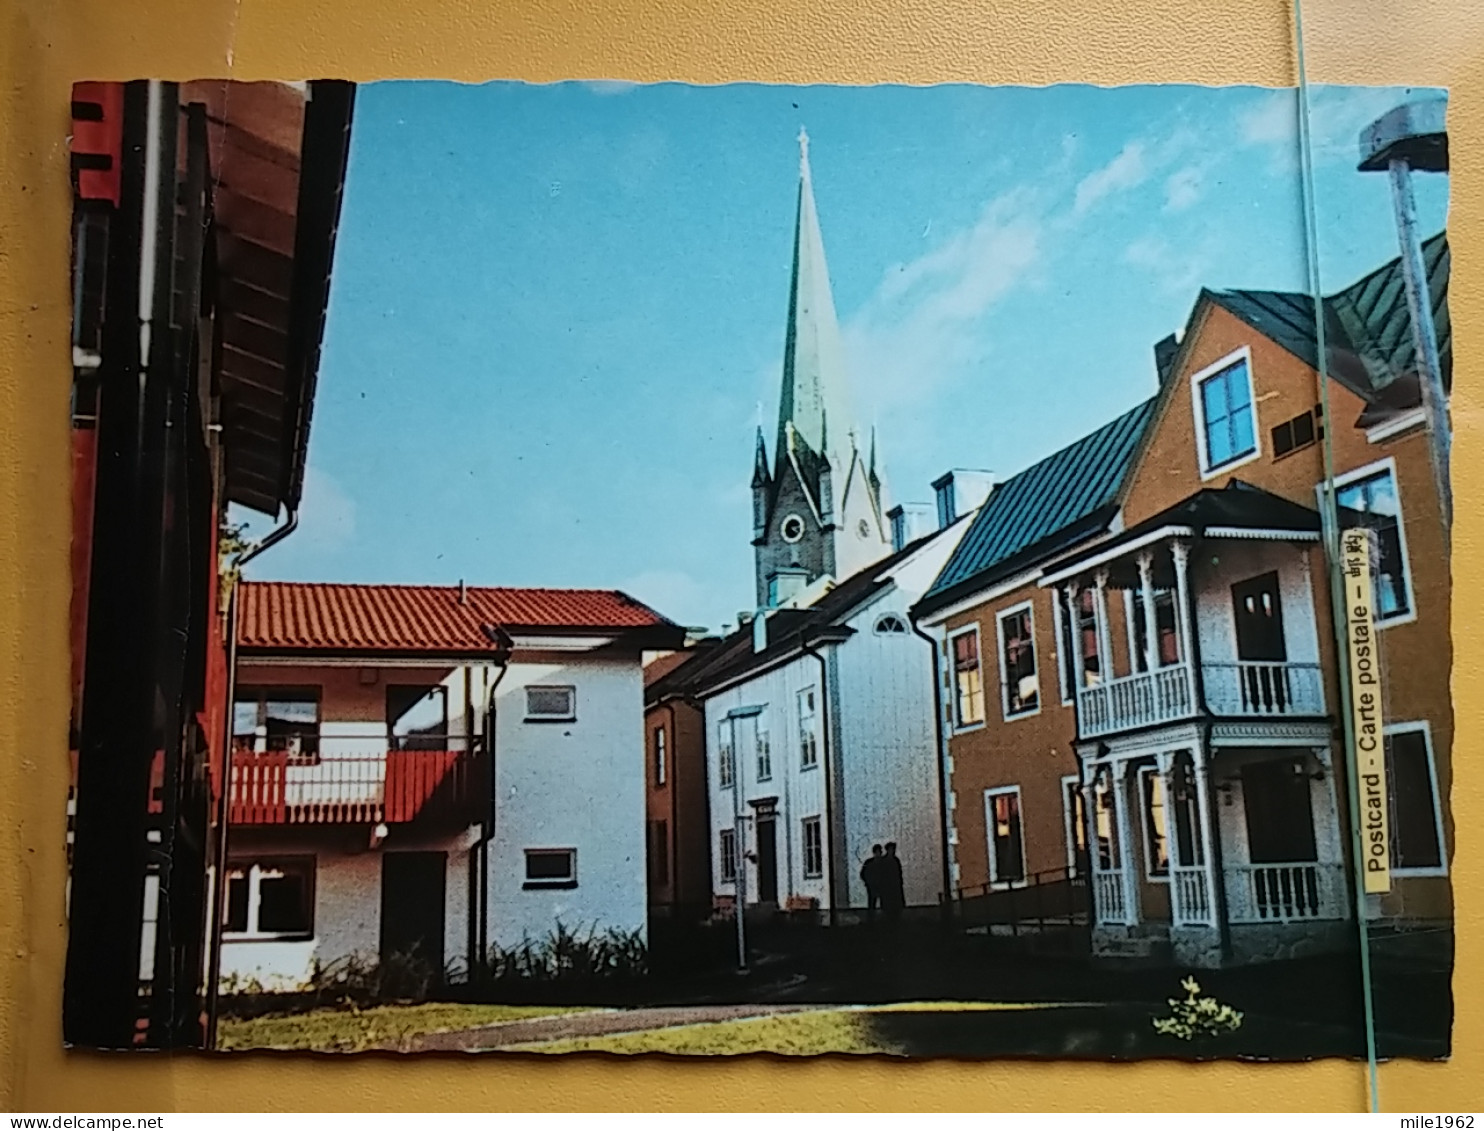 KOV 535-4 - LINKOPING, SWEDEN, KYRKA, CHURCH, EGLISE - Suecia